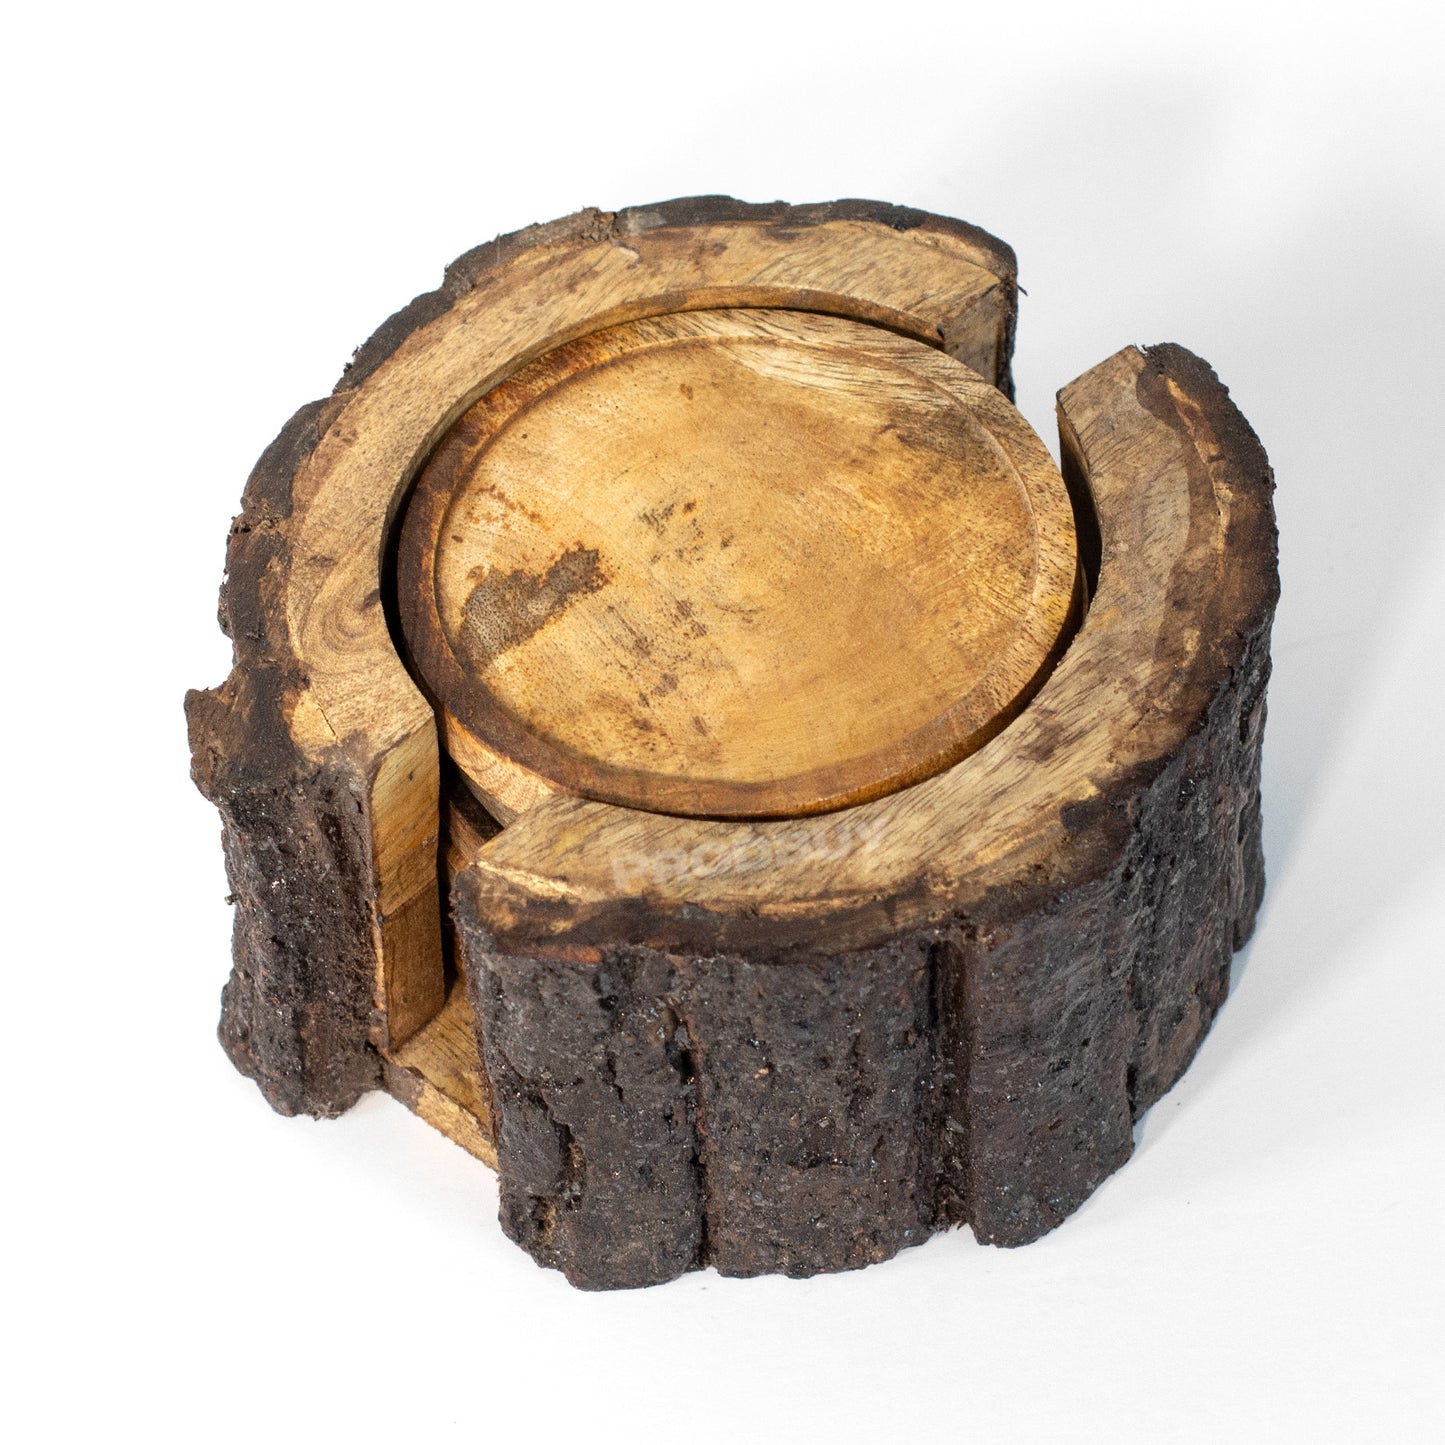 Set of 6 Round Mango Wood Coasters with Tree Bark Storage Holder